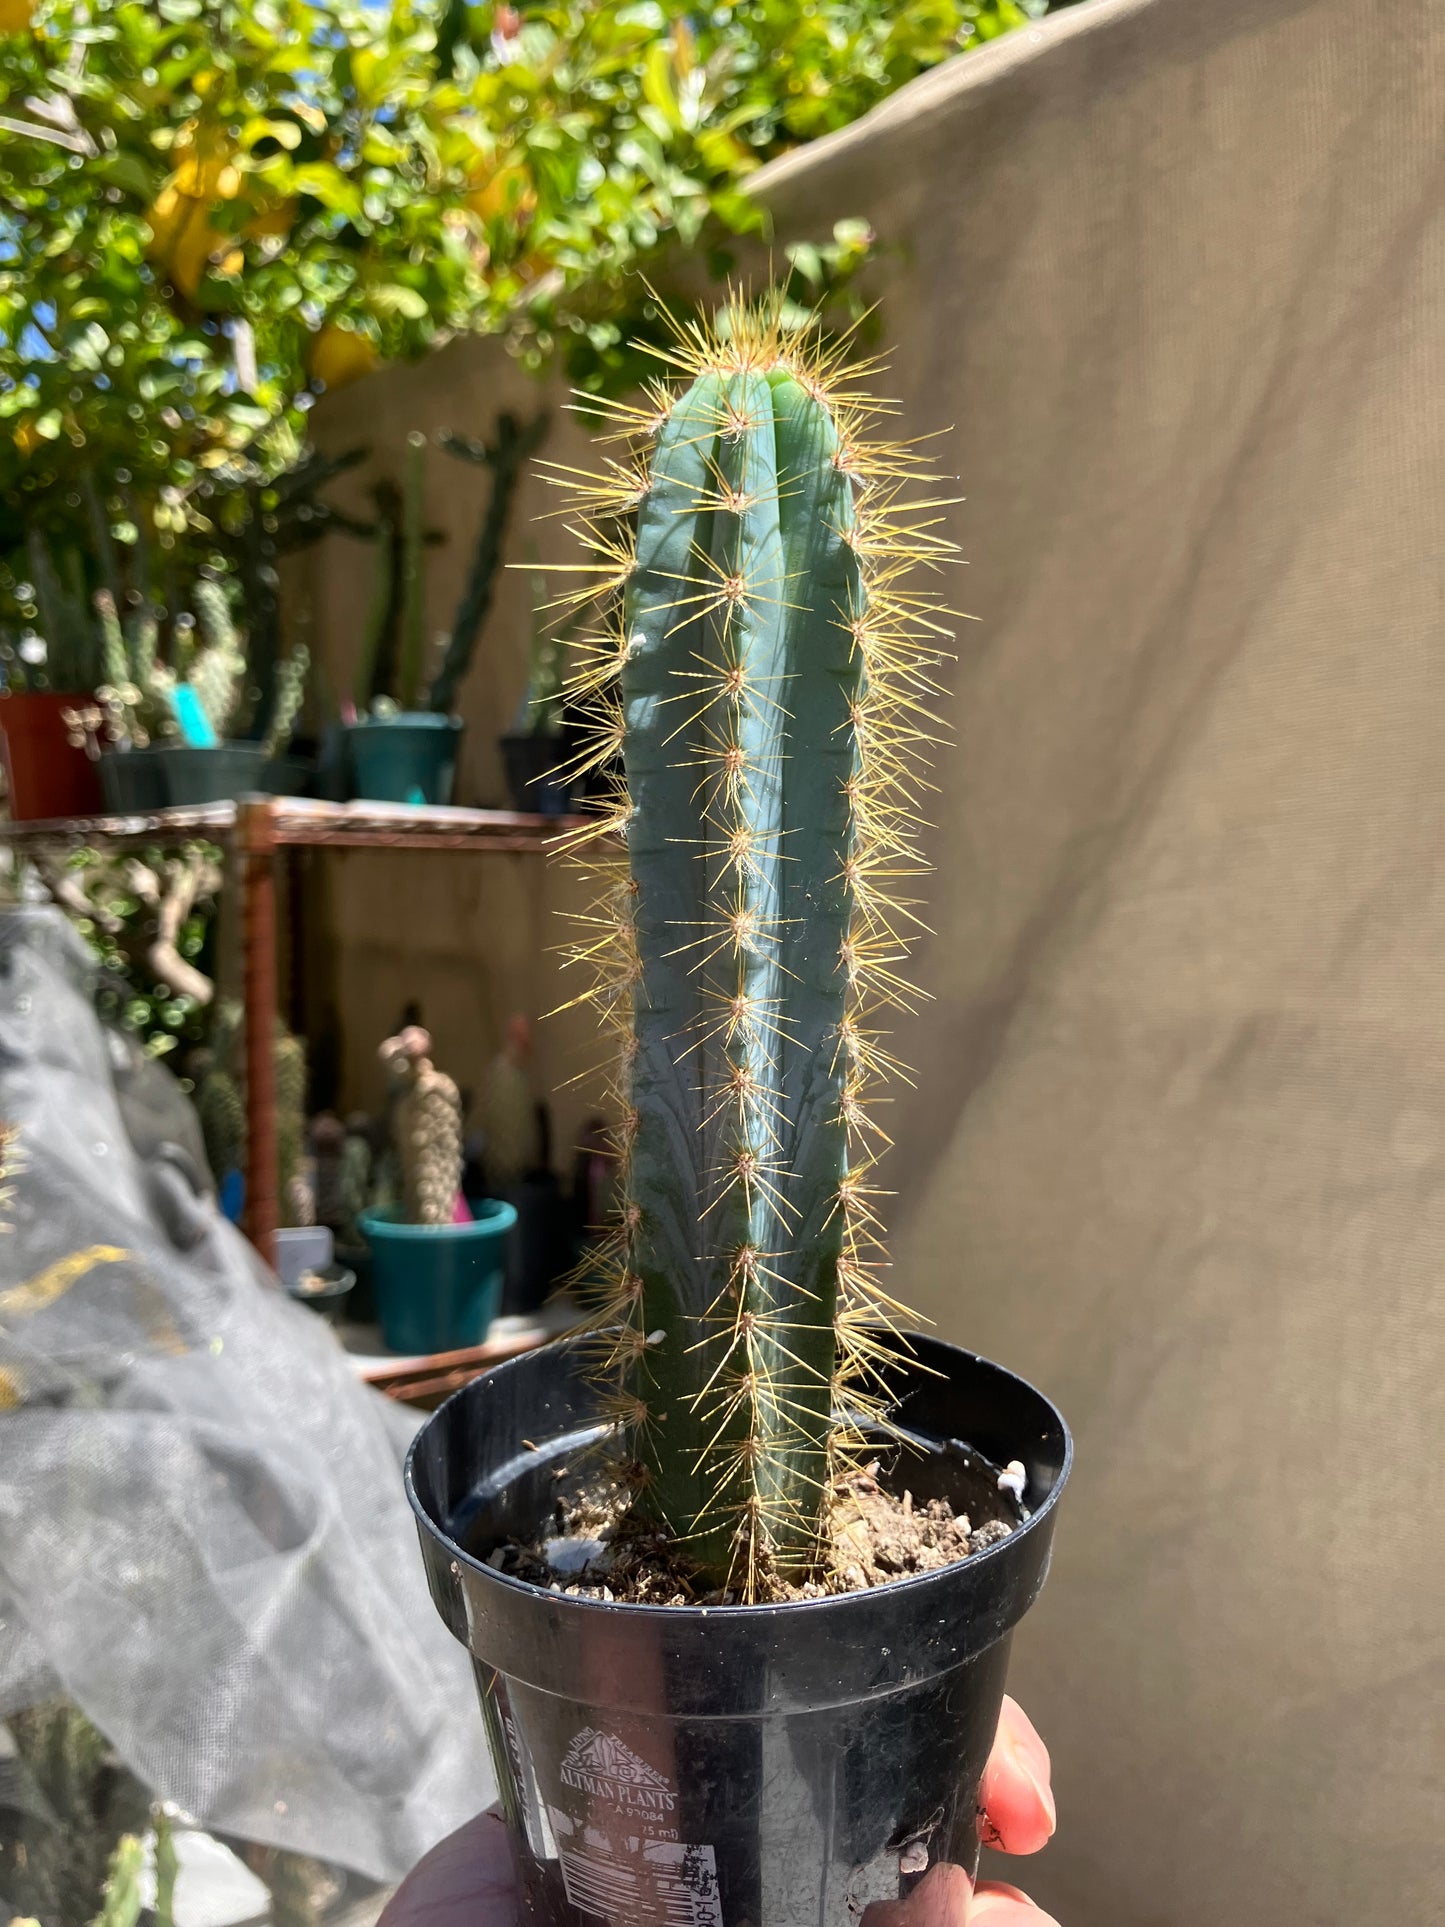 Pilosocereus Blue Azureus Cactus 7"Tall #45G